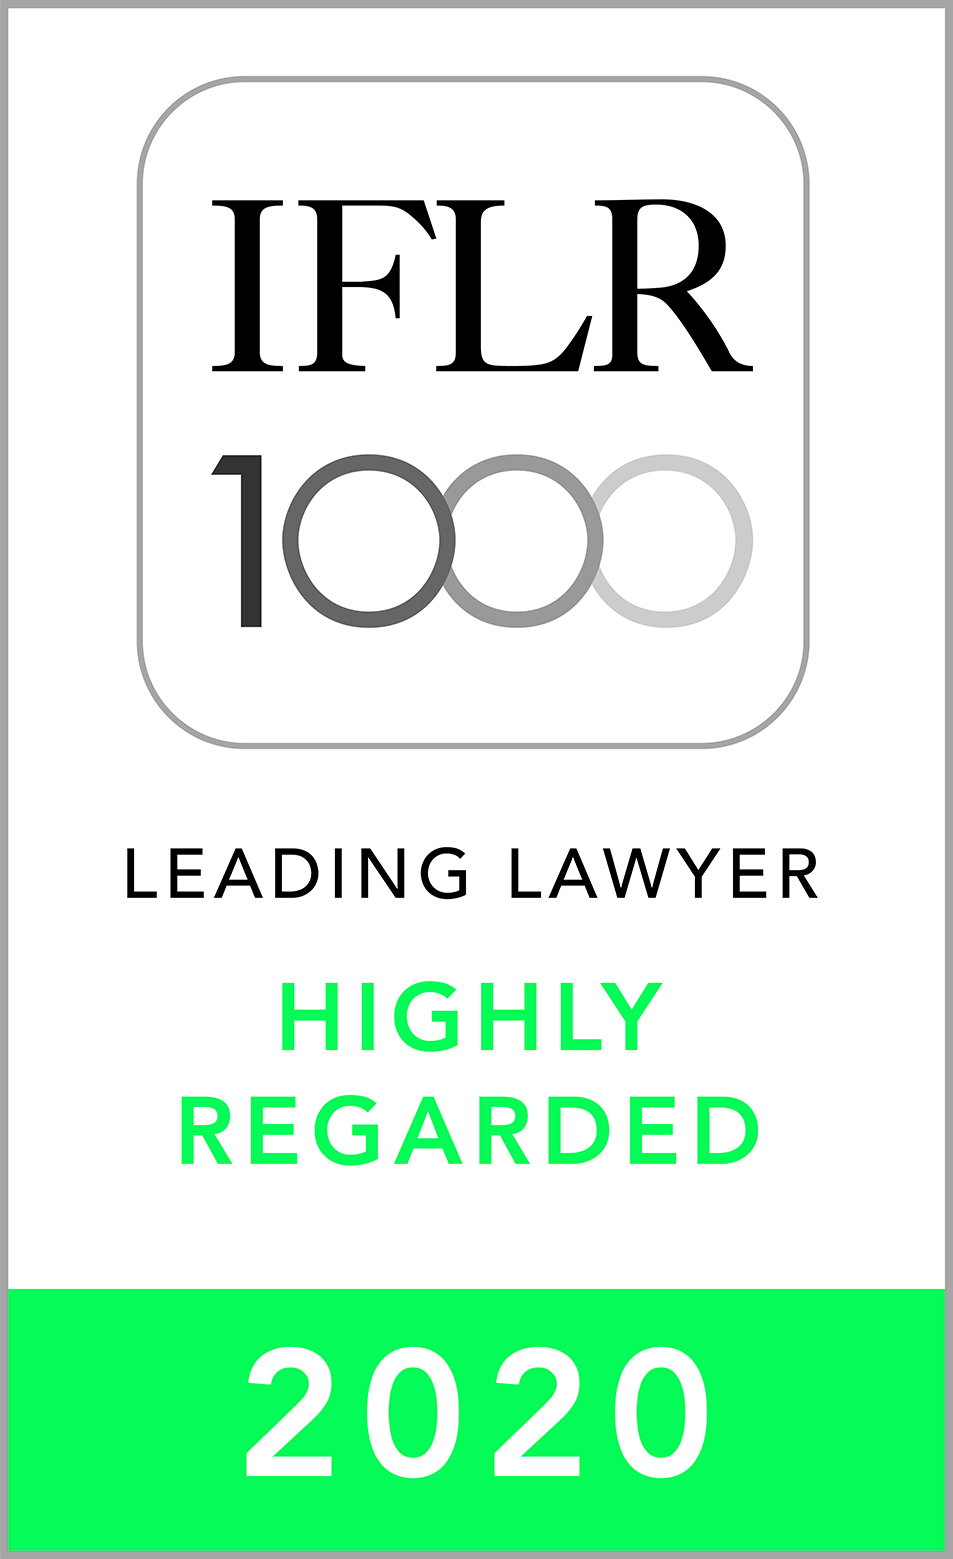 2020年《国际金融法律评论 1000》(IFLR1000) 亚太区高度推荐领先律师：金融及企业法